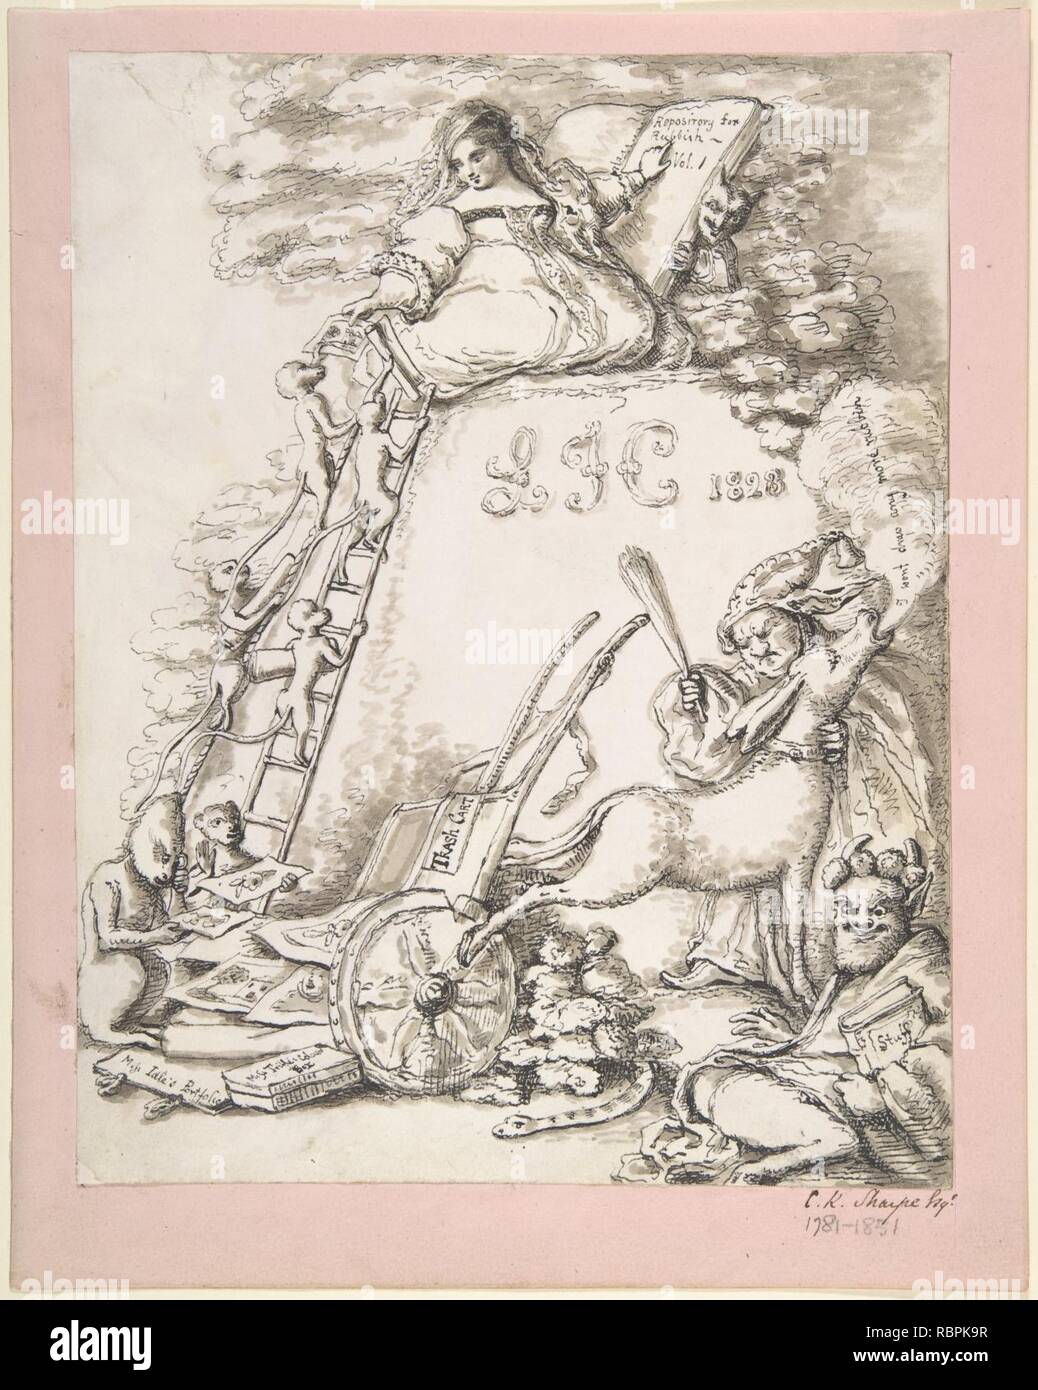 ‘Repository for Rubbish, vol. I, L.F.C 1828‘, Illustration for children's book Stock Photo